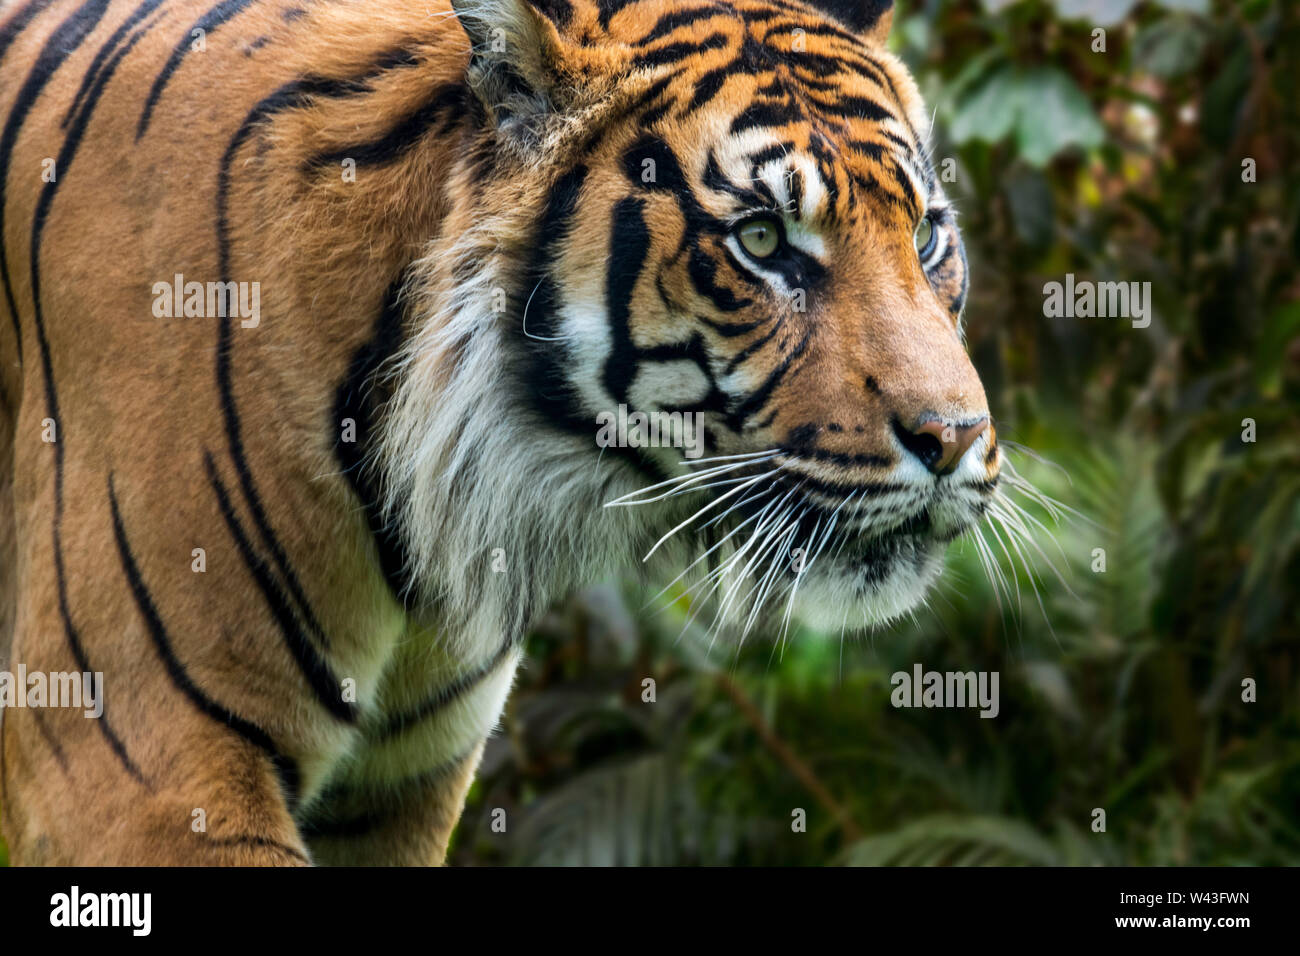 Tigre de Sumatra (Panthera tigris sondaica) en forêt tropicale, originaire de l'île indonésienne de Sumatra, Indonésie Banque D'Images